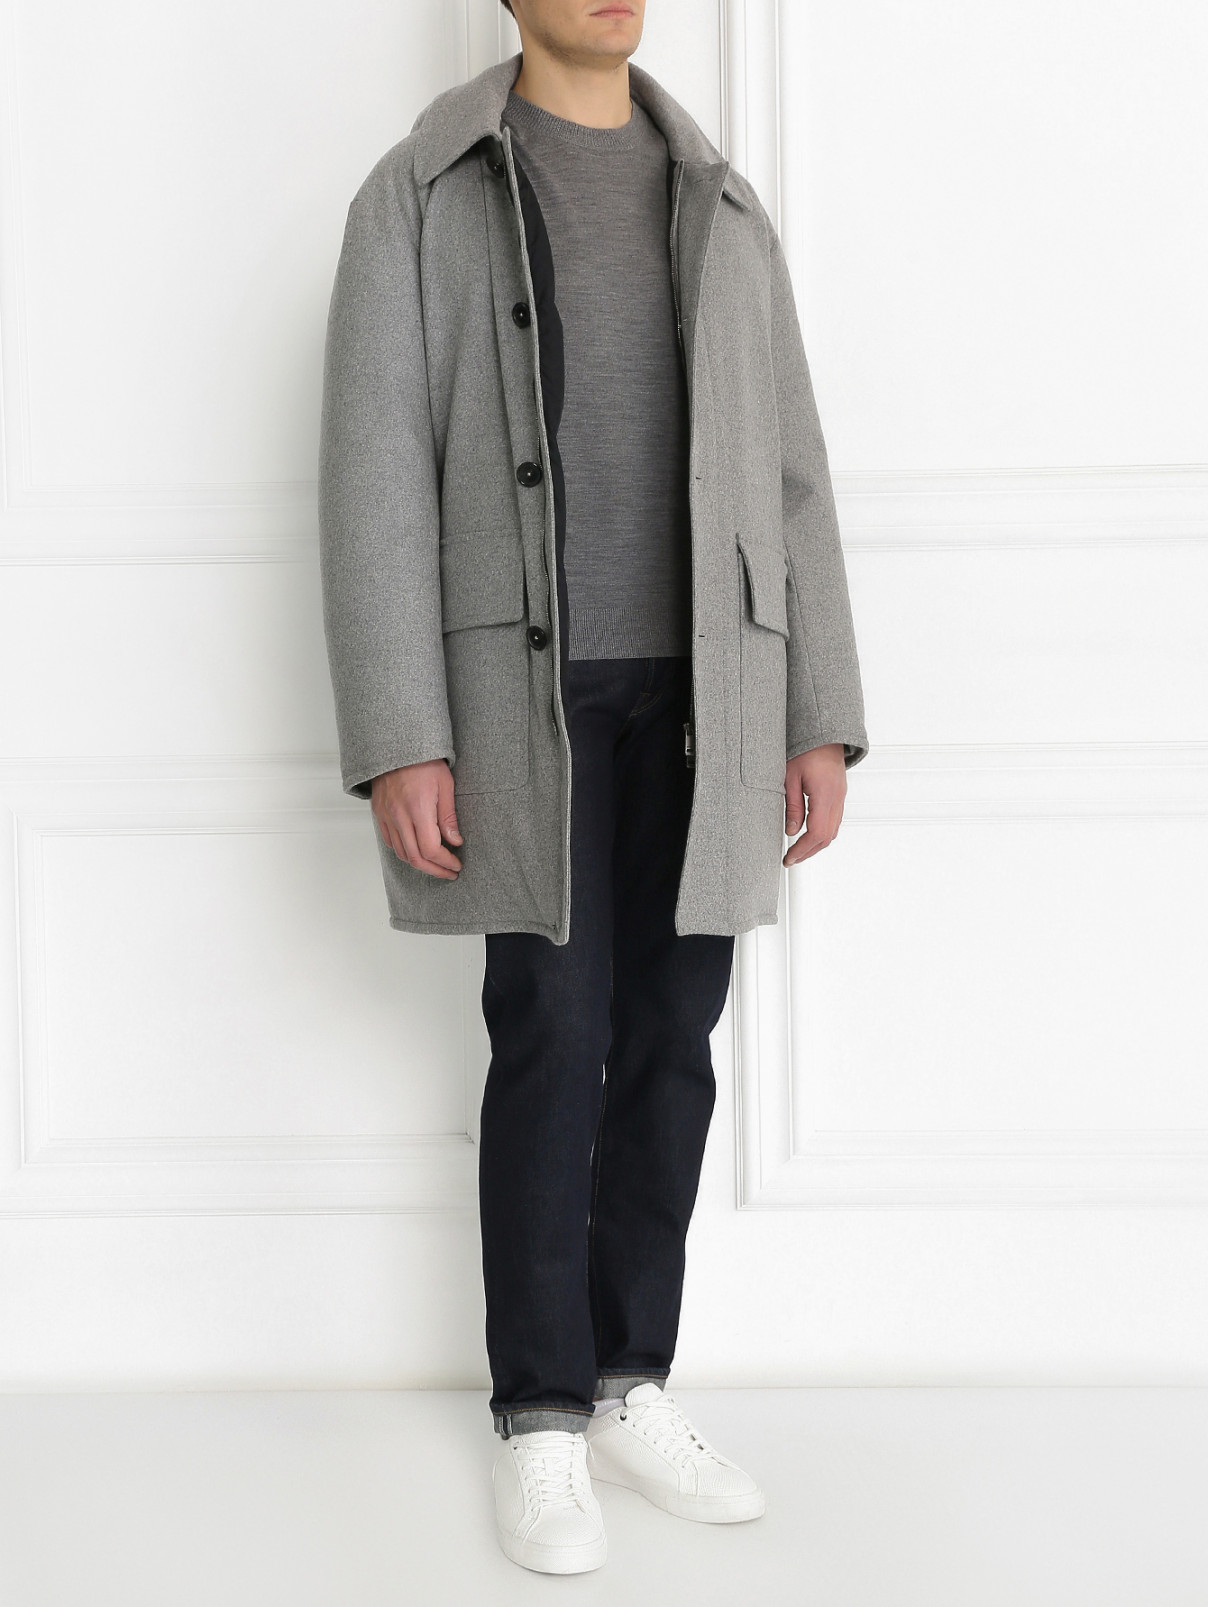 Пальто пуховое из шерсти на молнии с капюшоном Jil Sander  –  Модель Общий вид  – Цвет:  Серый